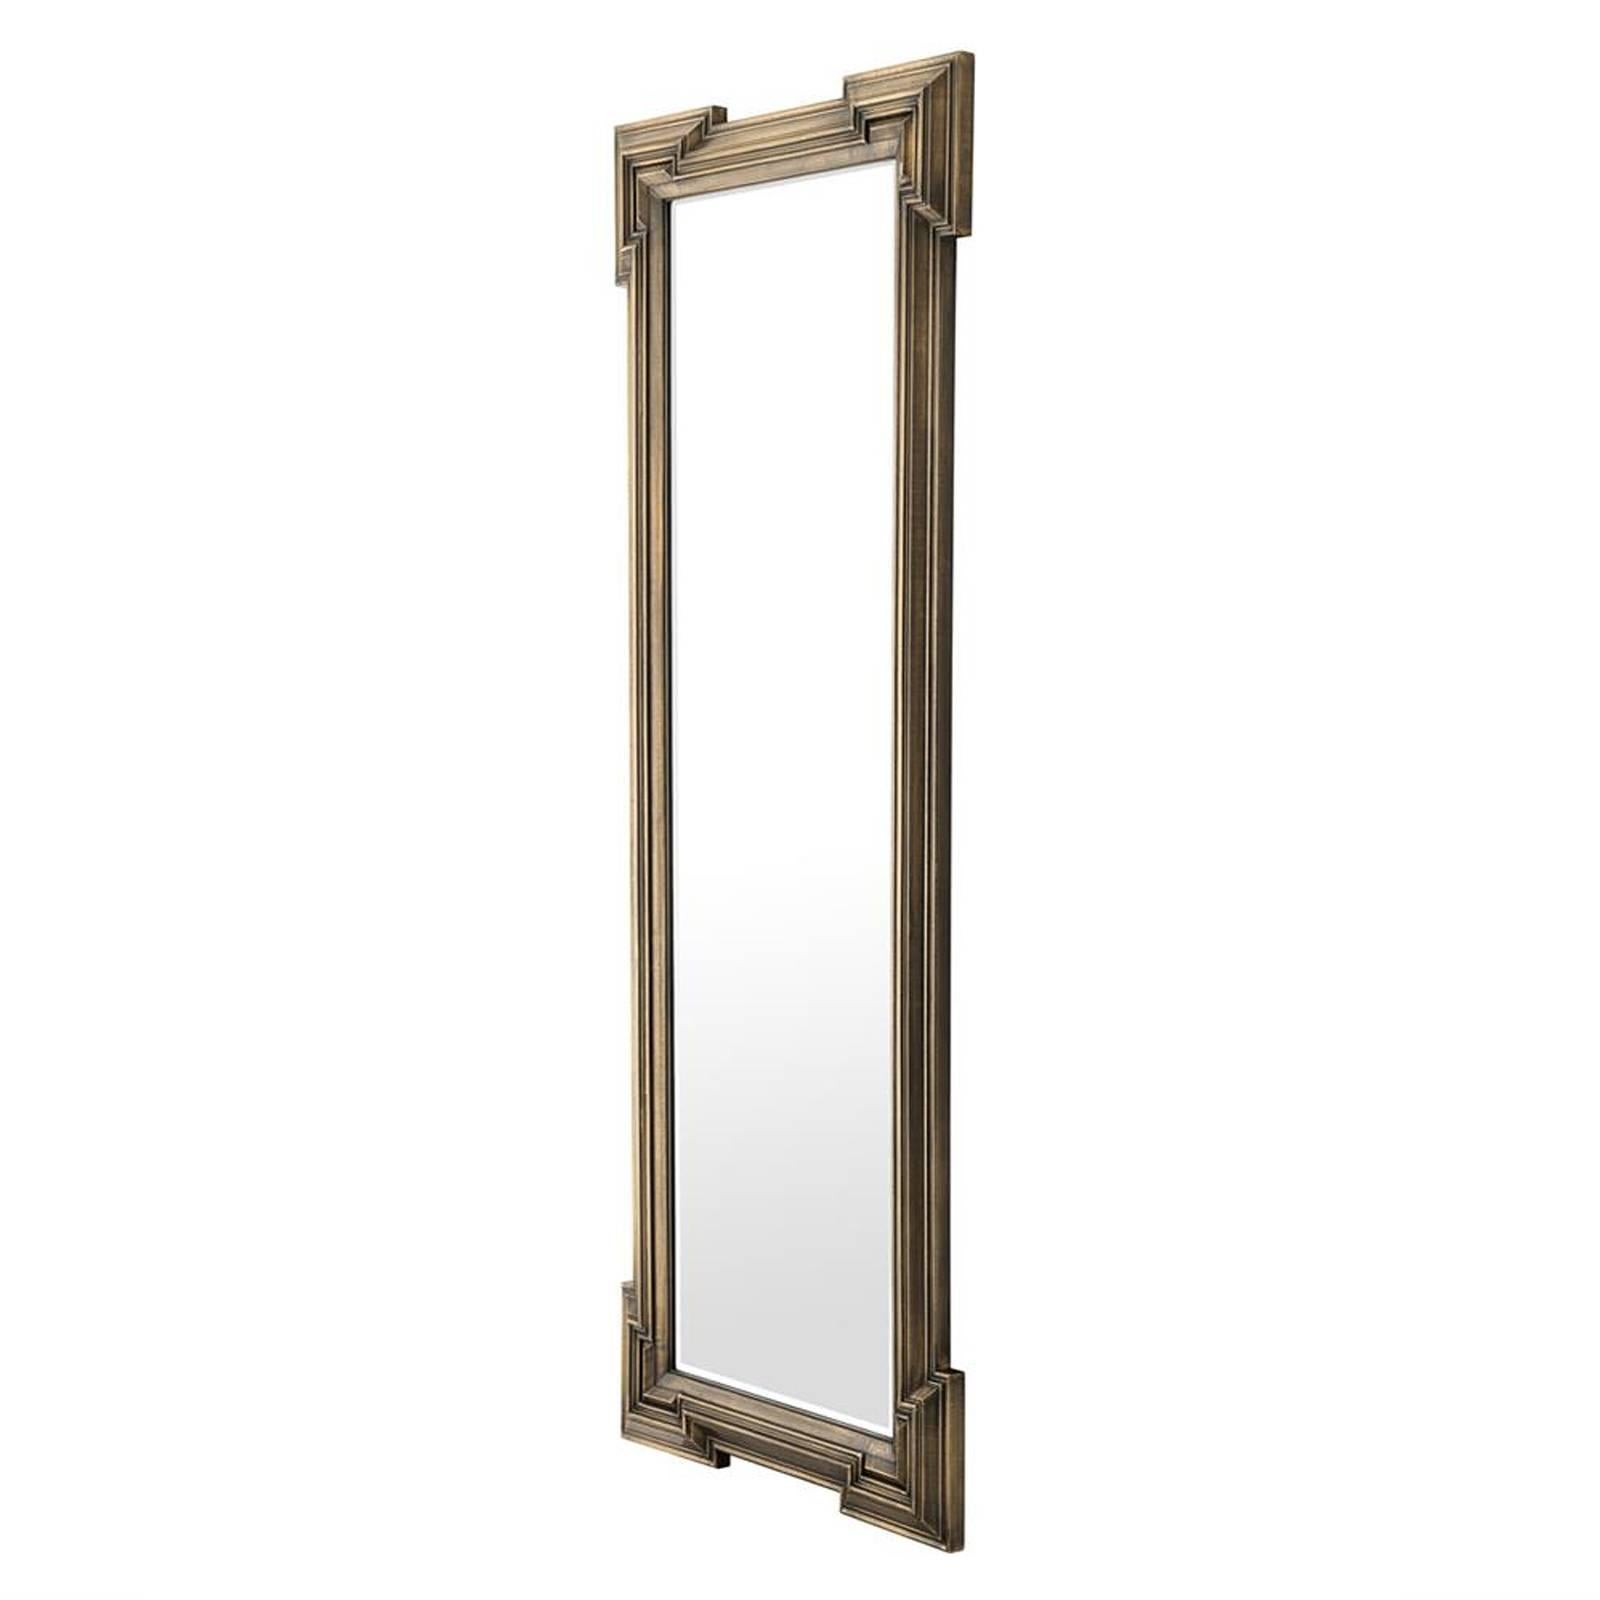 Miroir Scuadro avec finition laiton antique rectangulaire 
cadre et verre miroir biseauté. Une pièce élégante.
Disponible également avec un cadre carré.
